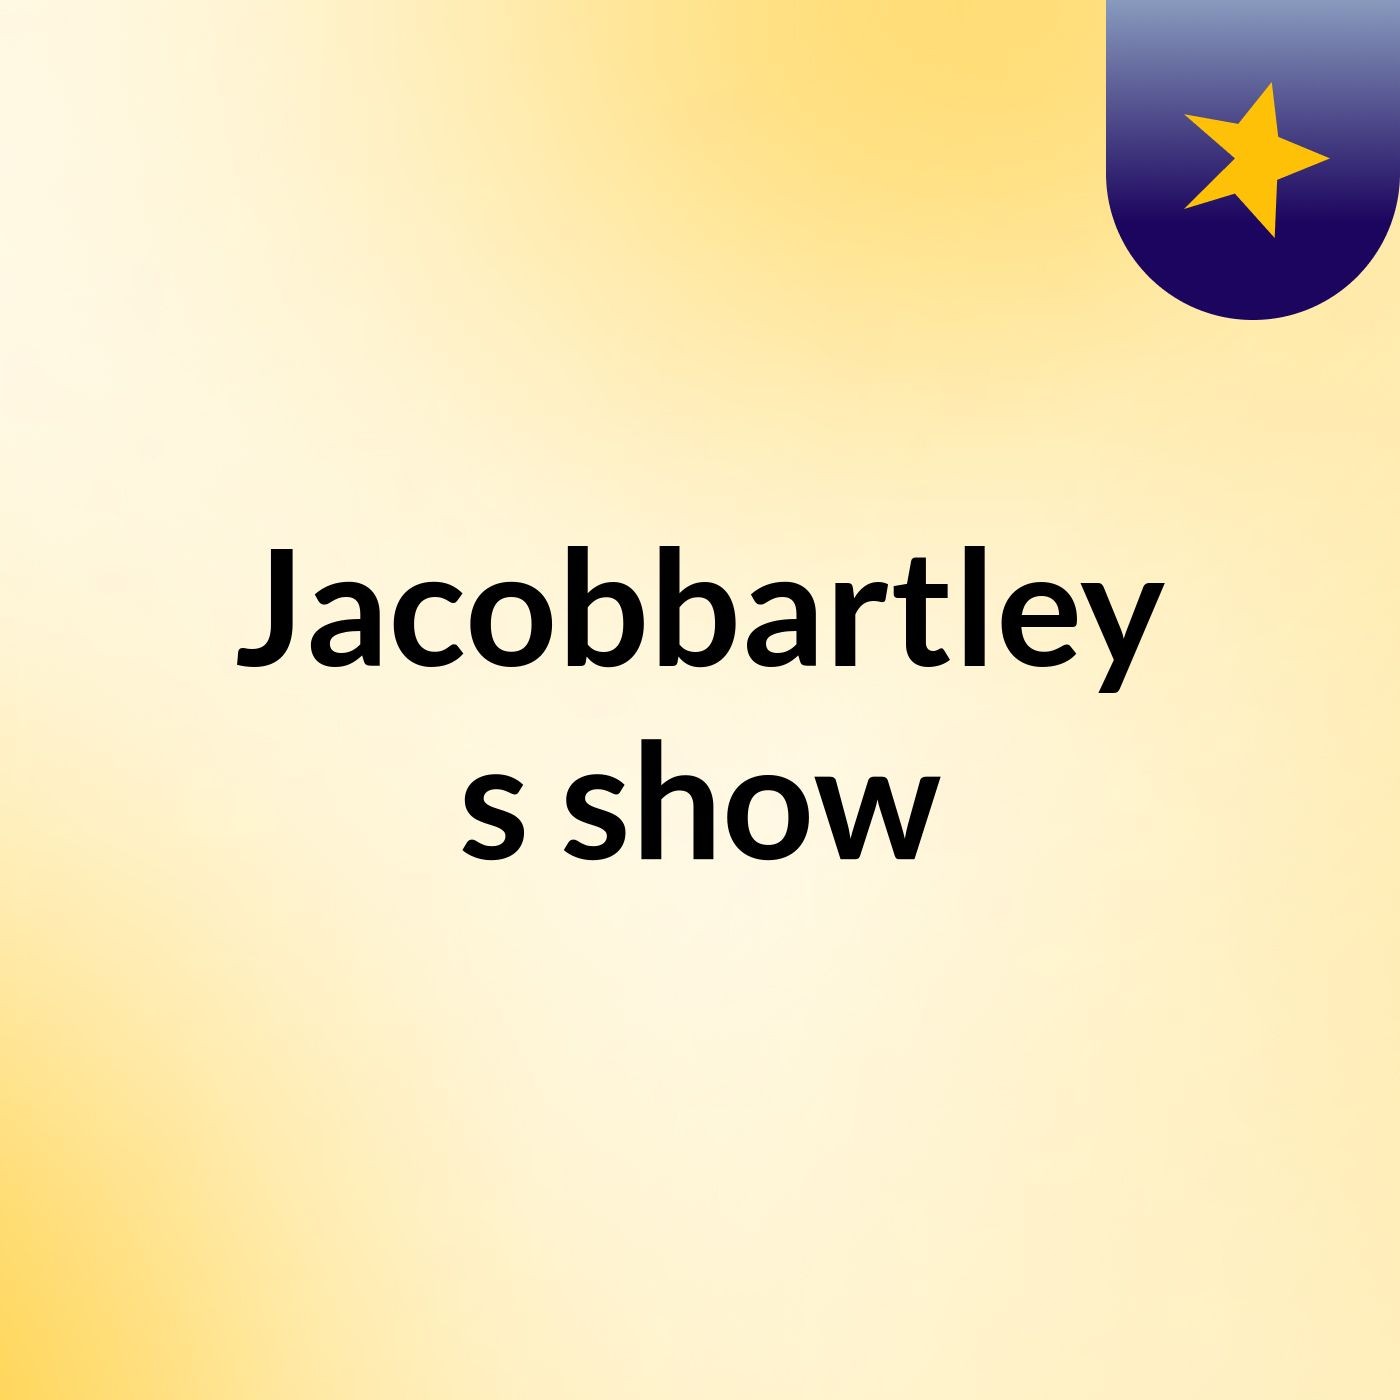 Episode 18 - Jacobbartley's show